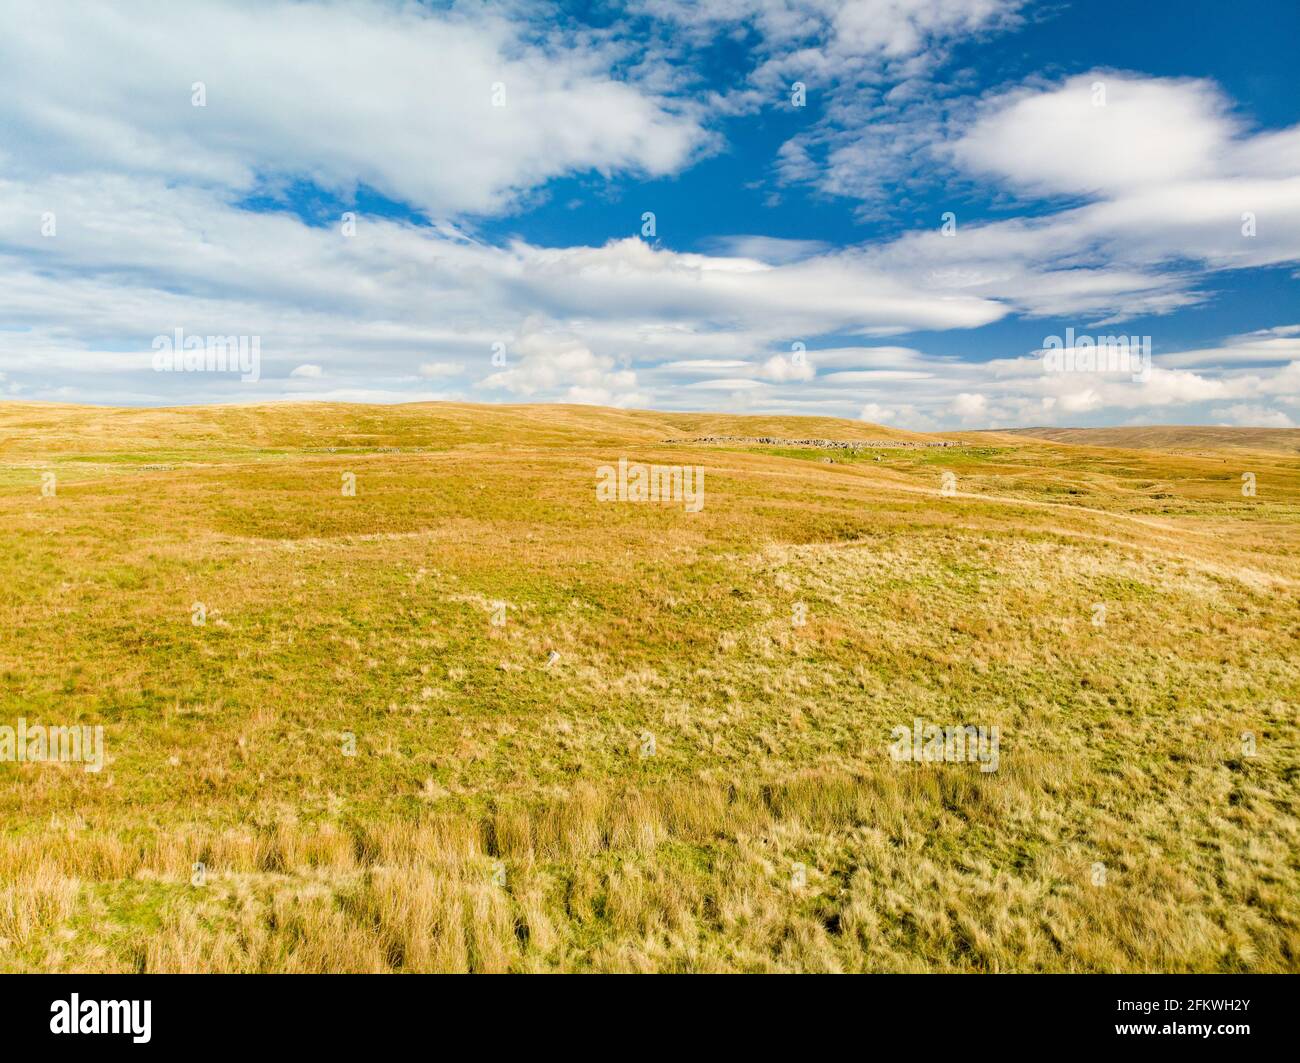 Luftaufnahme von gelben Feldern mit trockenem Gras im Yorkshire Dales National Park in Nordengland, Großbritannien. Stockfoto